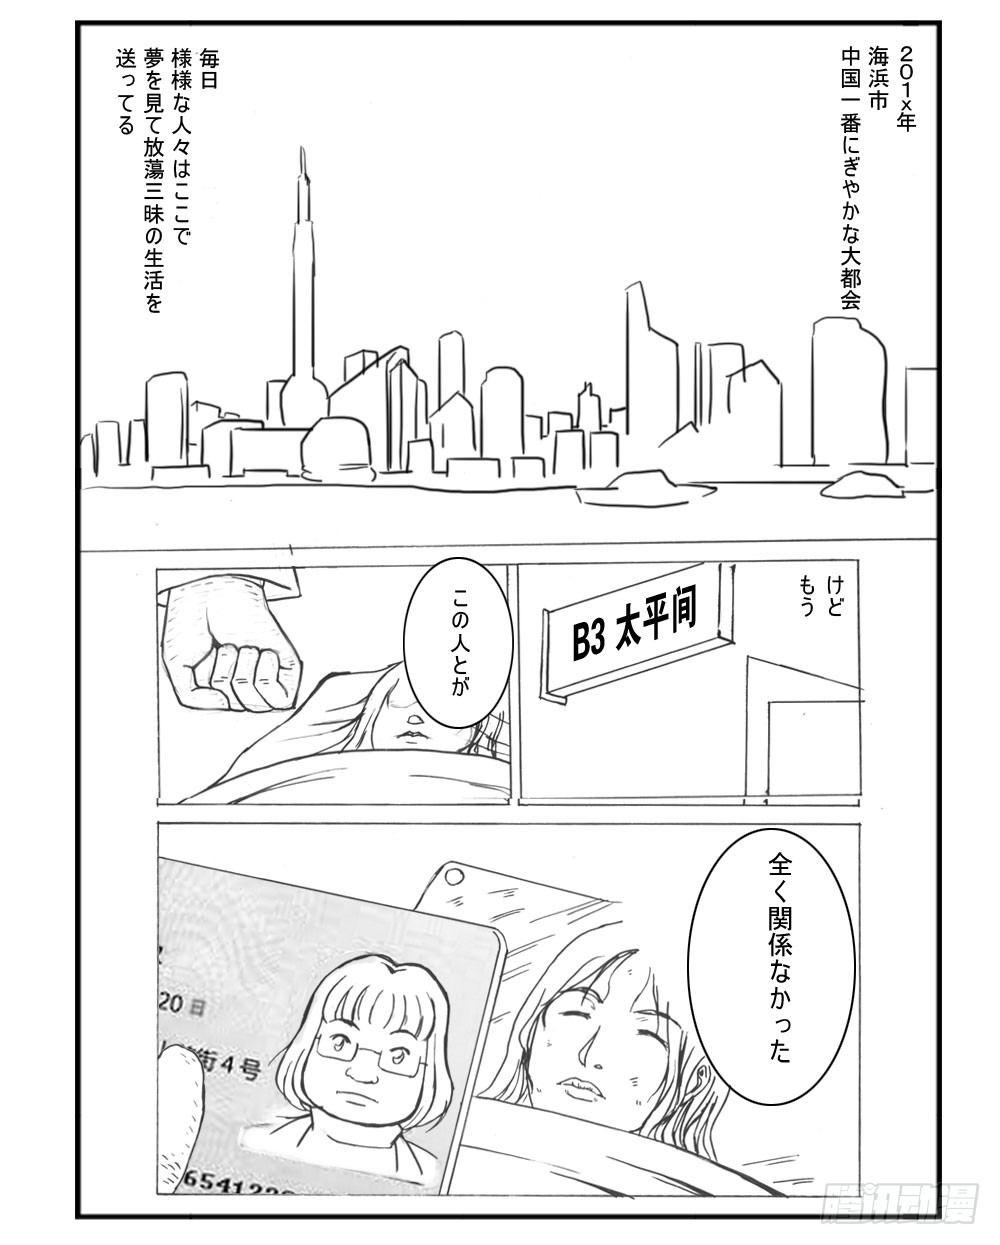 日在日本 - 332 未完的漫画(1) - 1